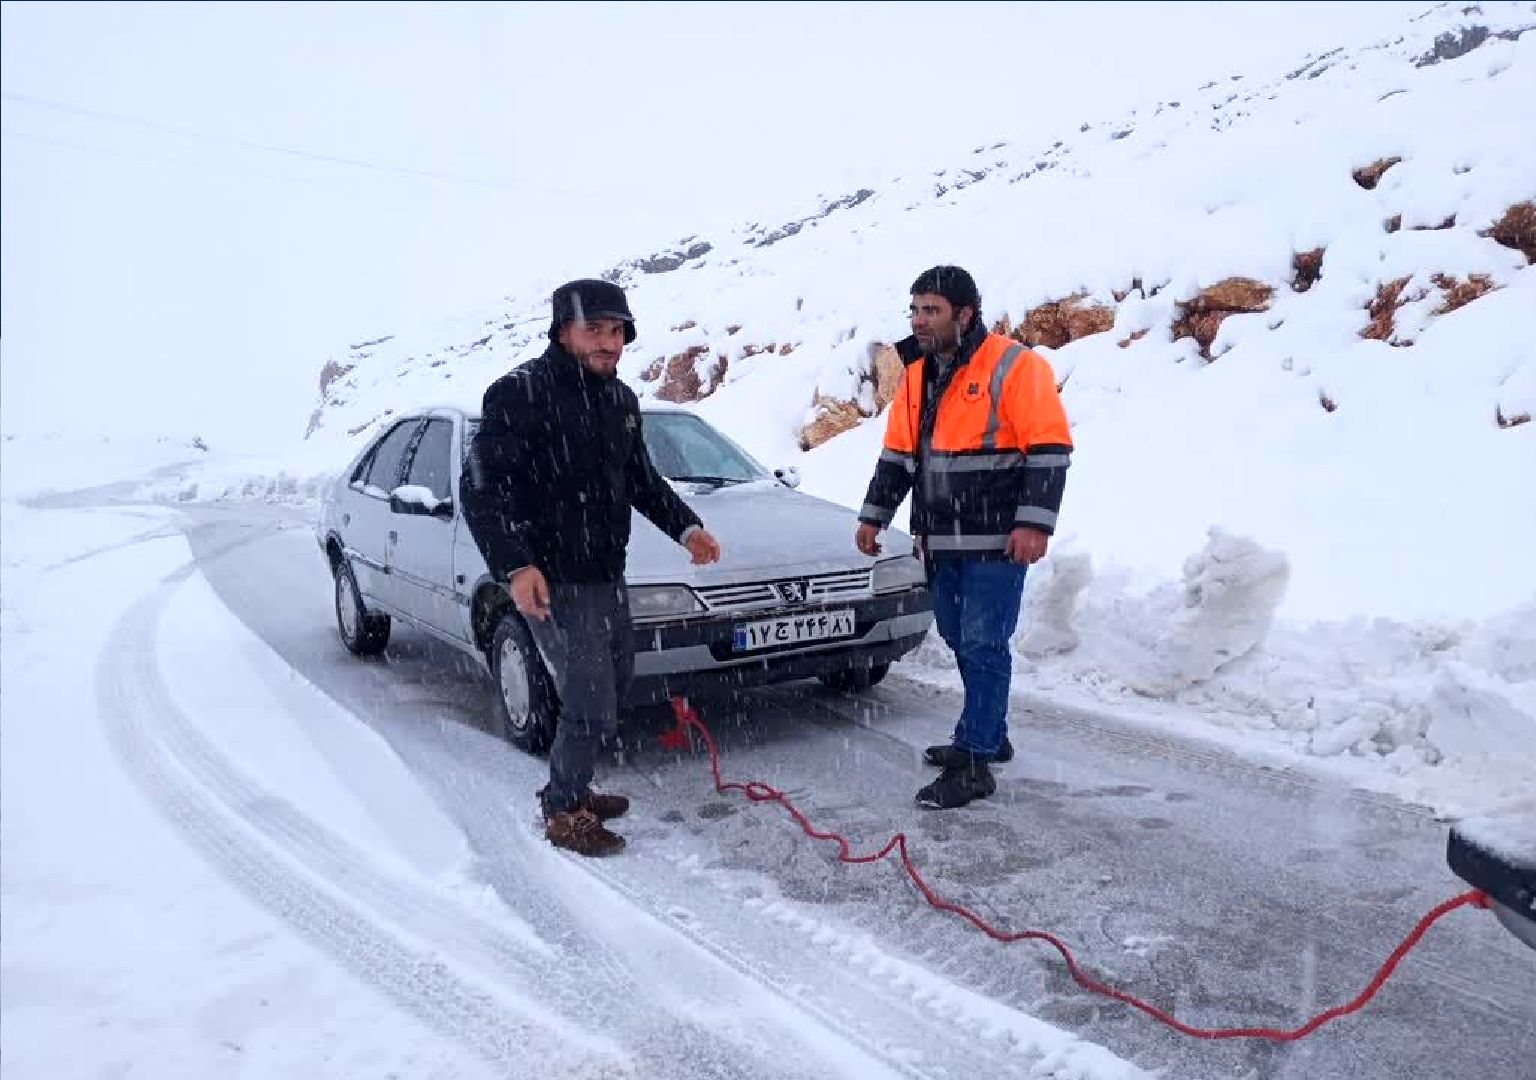 کولاک سنگین برف در کوهرنگ / توصیه راهداری به رانندگان + عکس